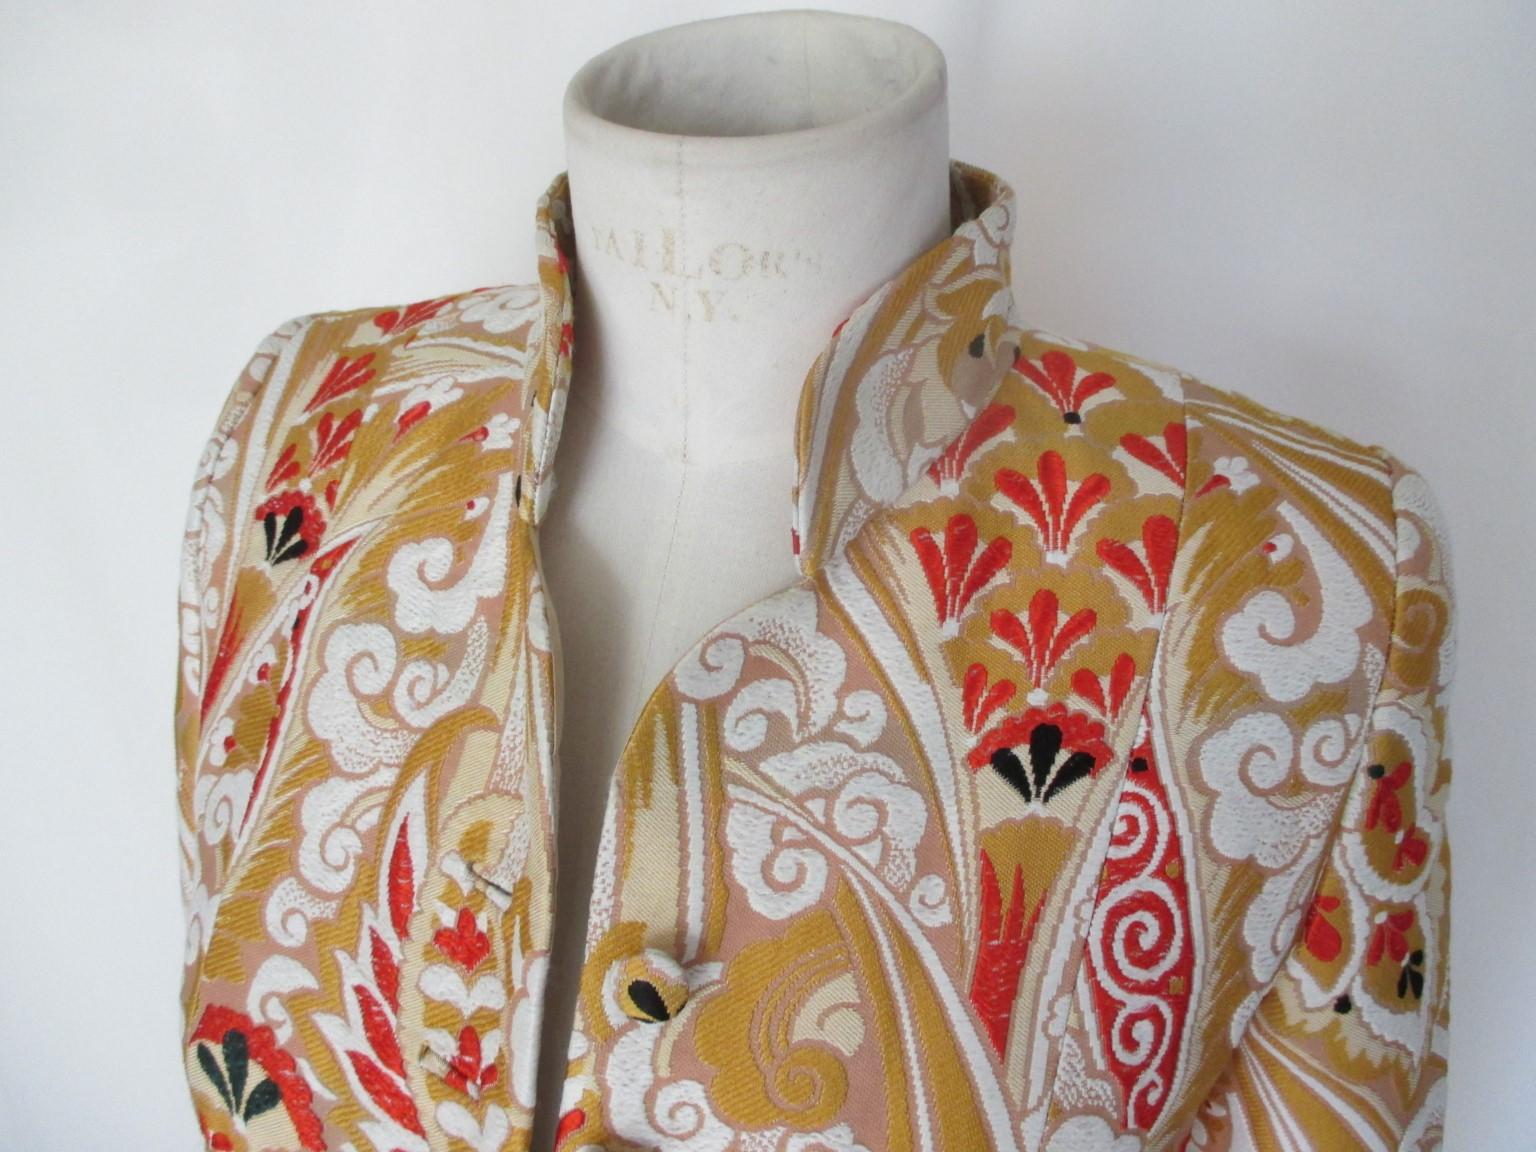 Dies ist eine seltene Vintage Jacke im Kimono-Stil aus der High End Armani Prive Collection'S

Wir bieten weitere exklusive Vintage-Artikel an, siehe unseren Frontstore.

Einzelheiten:
Sammler - Artikel
MATERIAL : Seidenmischung
Kimono aus